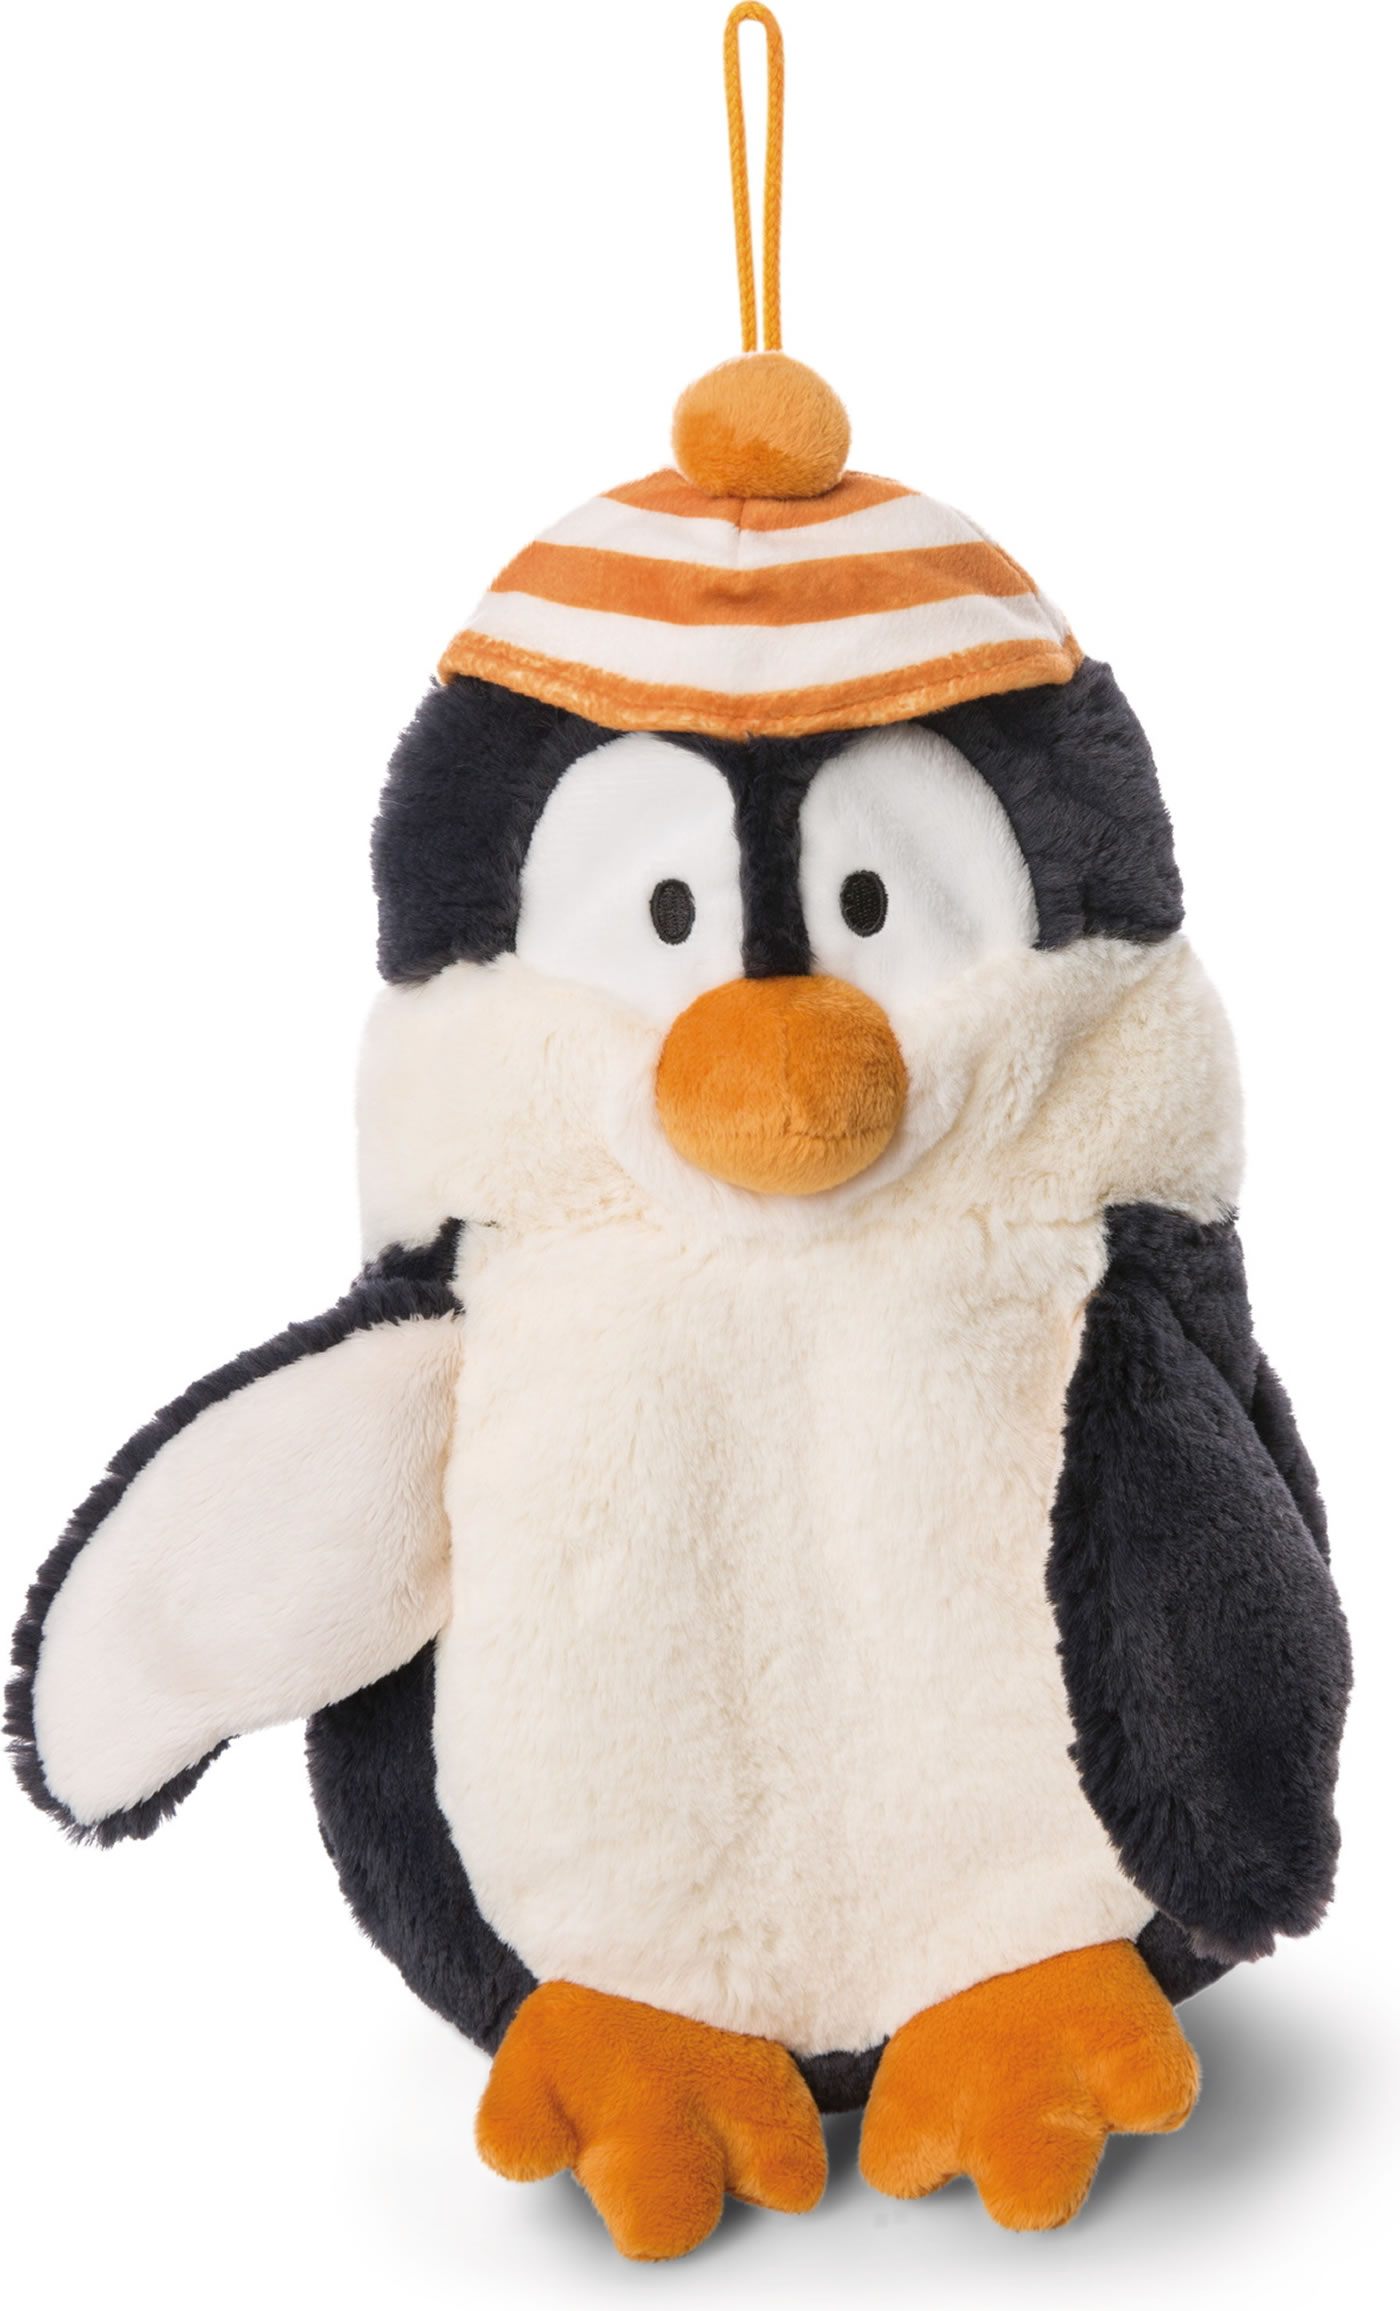 Kuscheltier Pinguin klein von Nici im Ballon verpackt. Stofftier